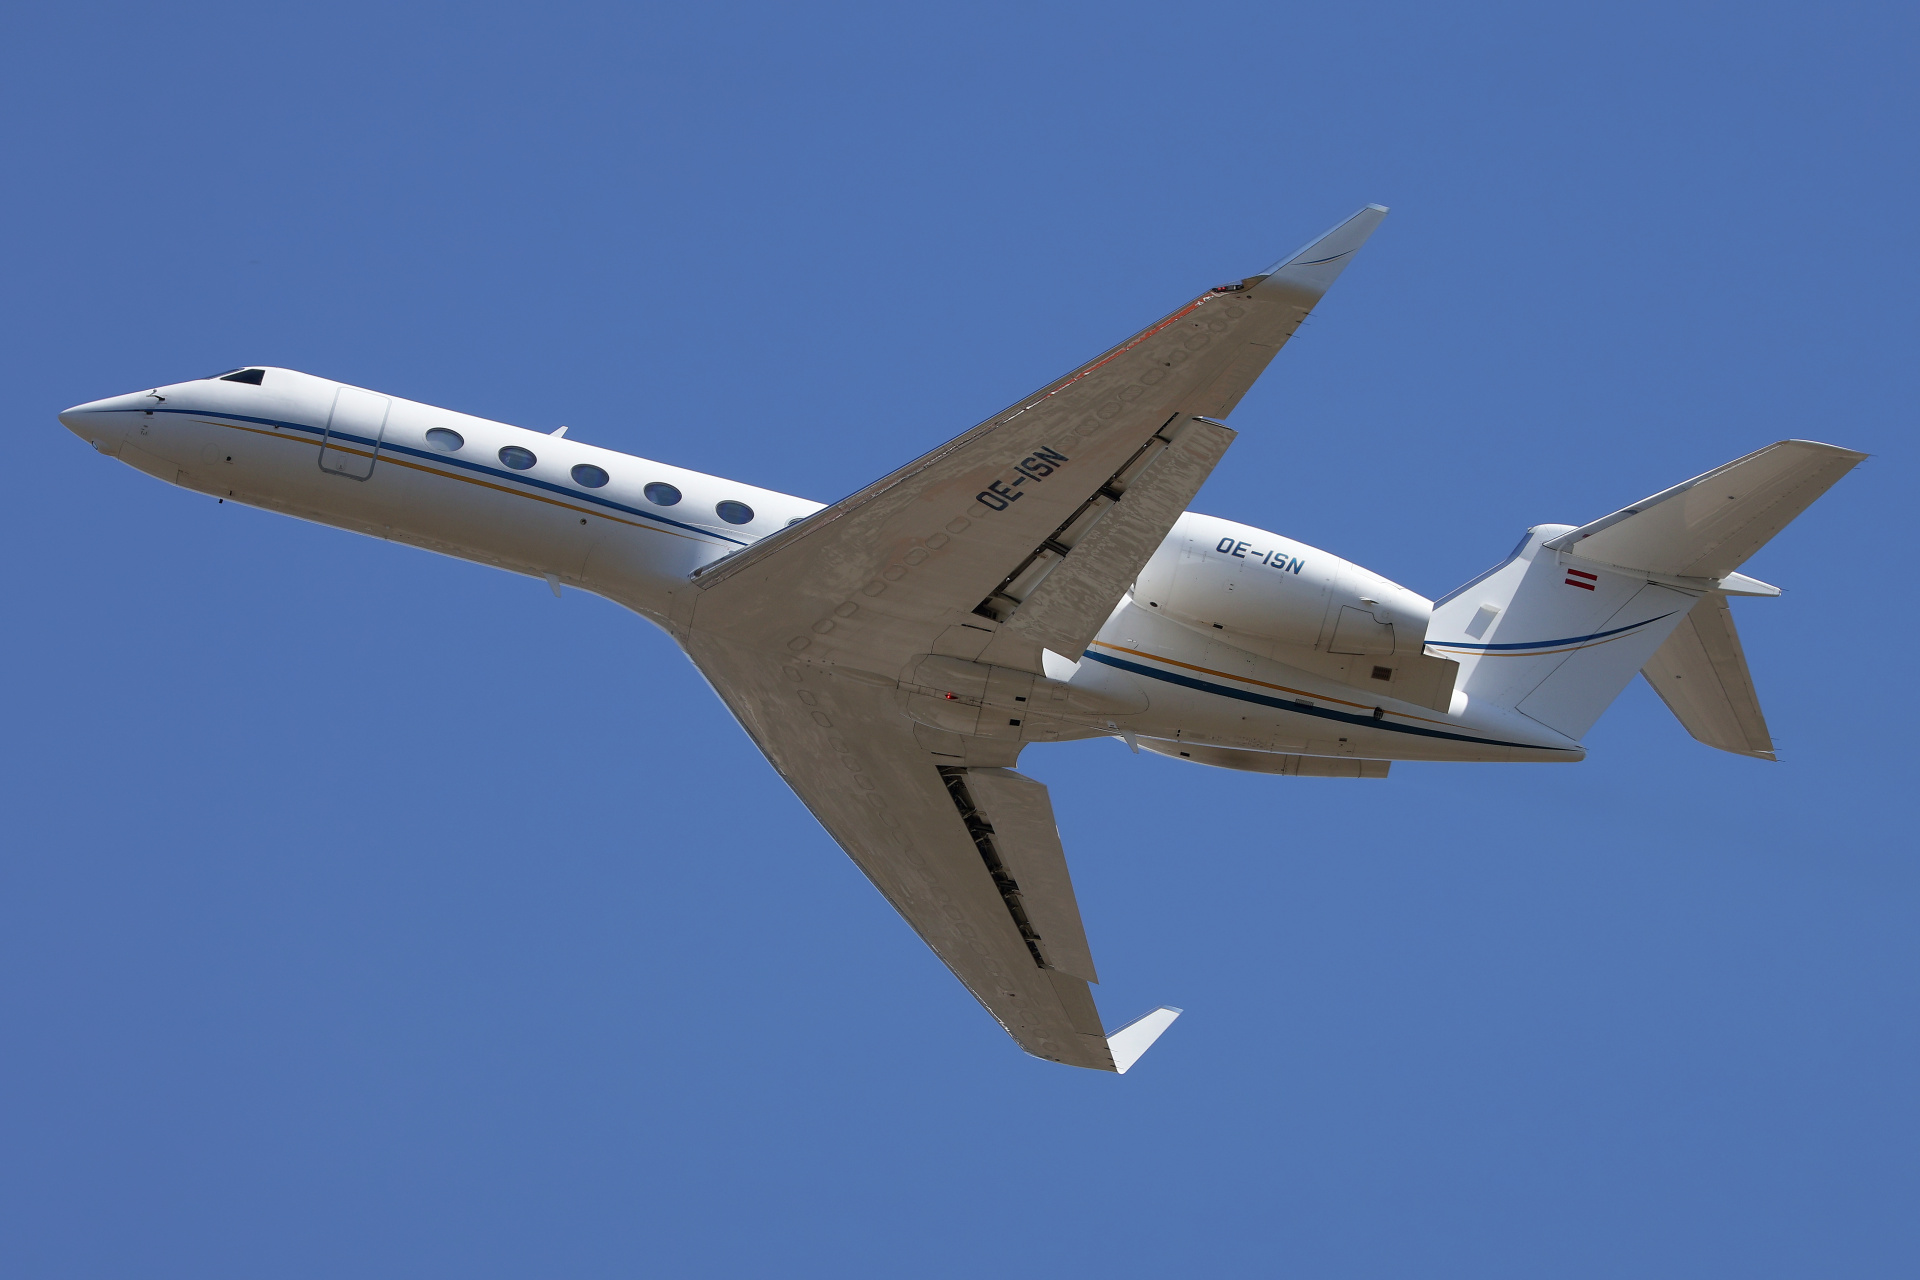 OE-ISN, Avcon Jet (Aircraft » EPWA Spotting » Gulfstream V » G550 (GV-SP))